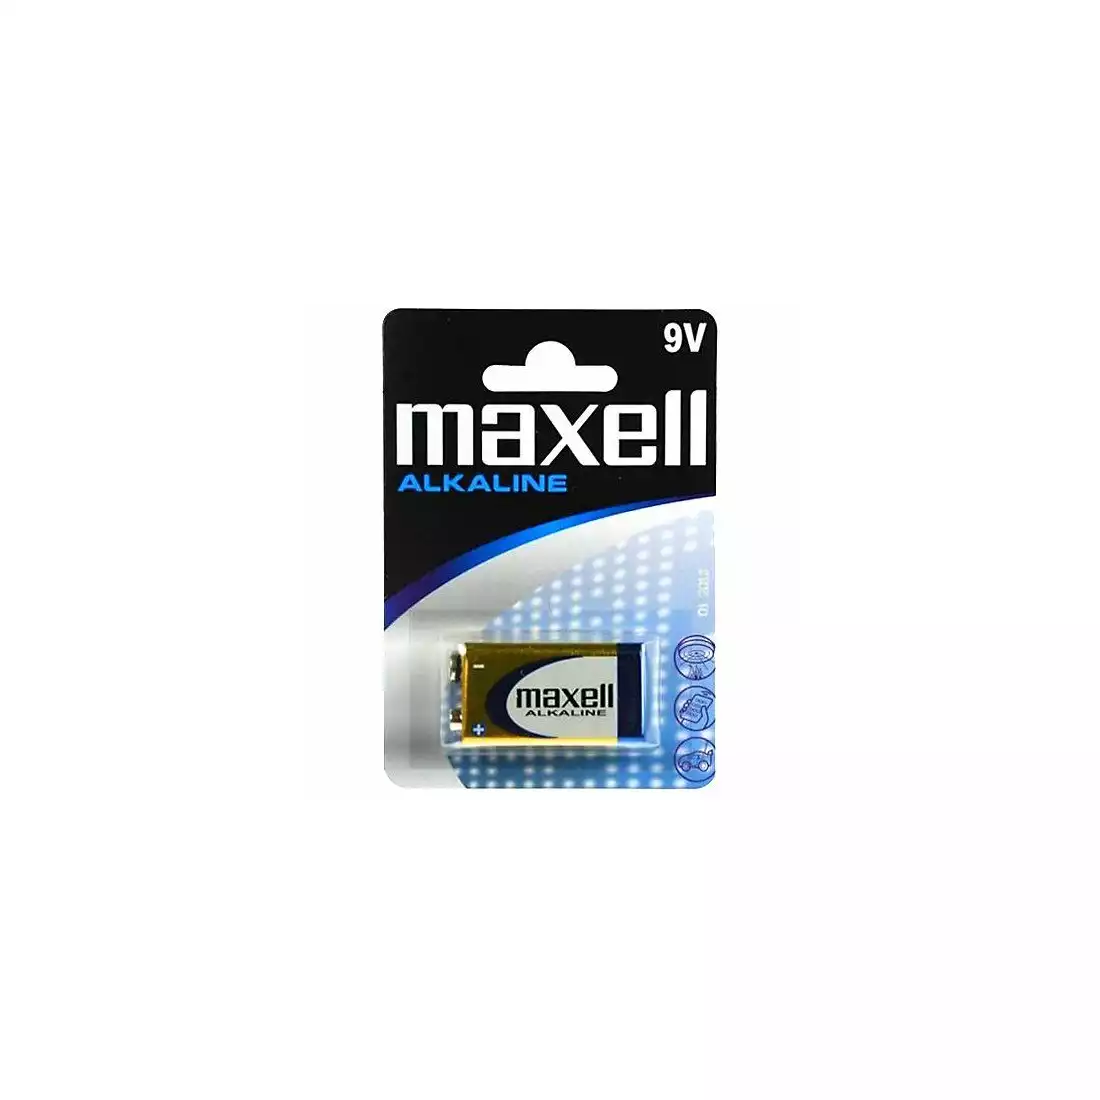 MAXELL LR61 9V alkalická baterie